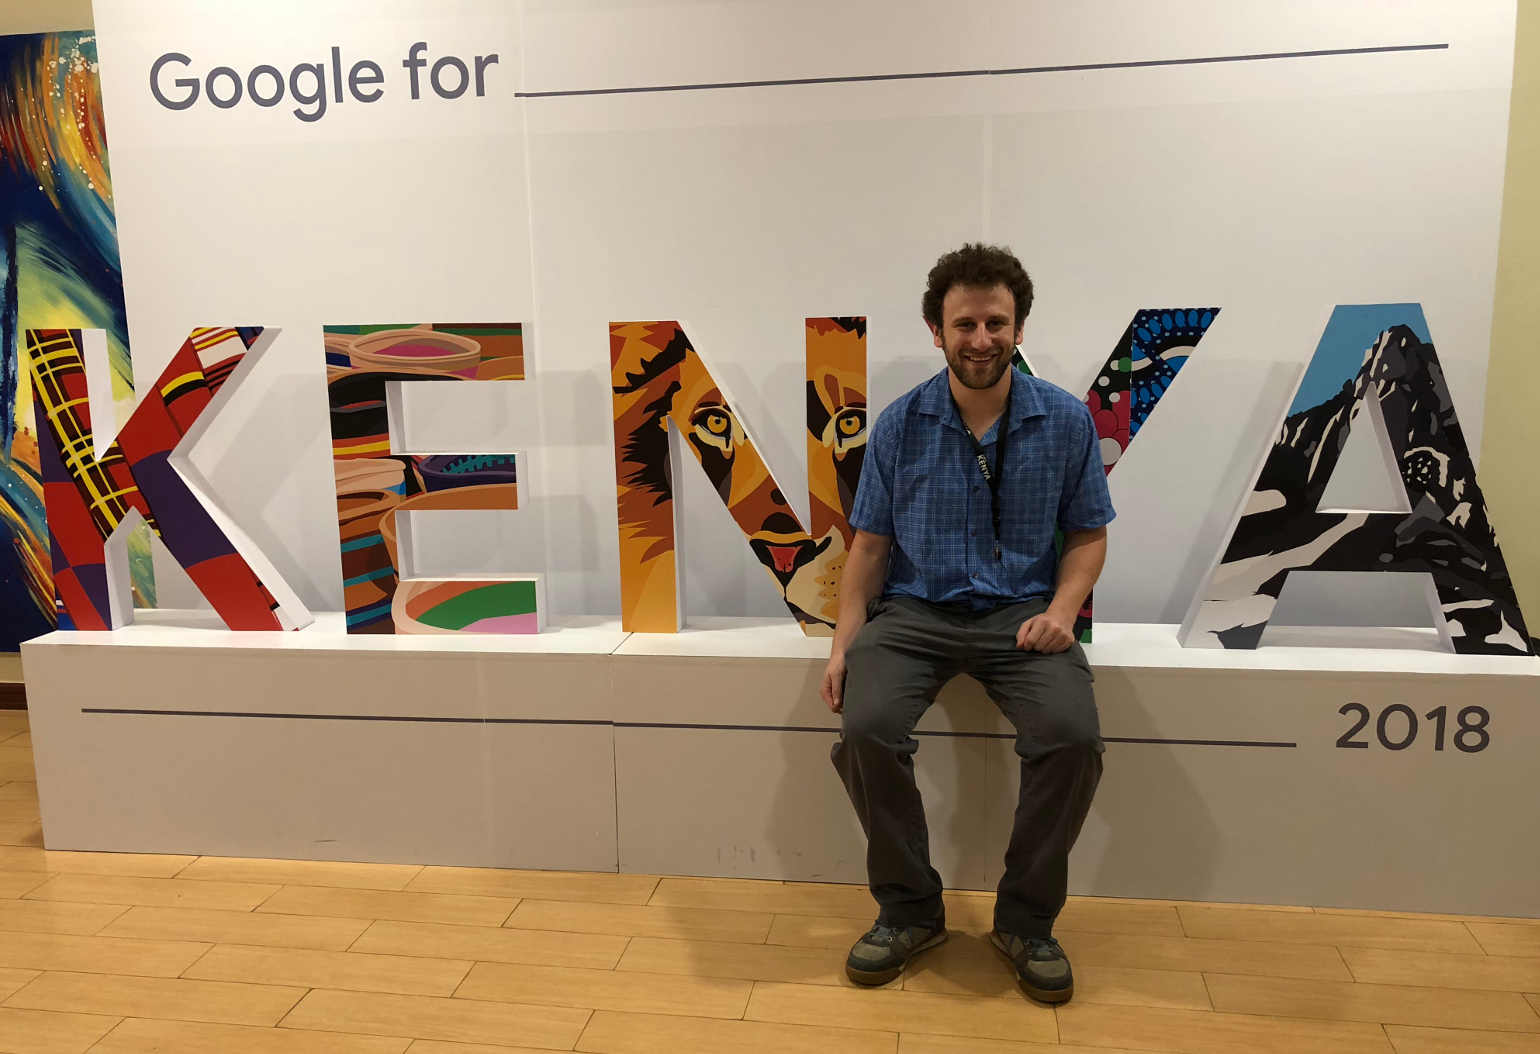 Will at Google for Kenya